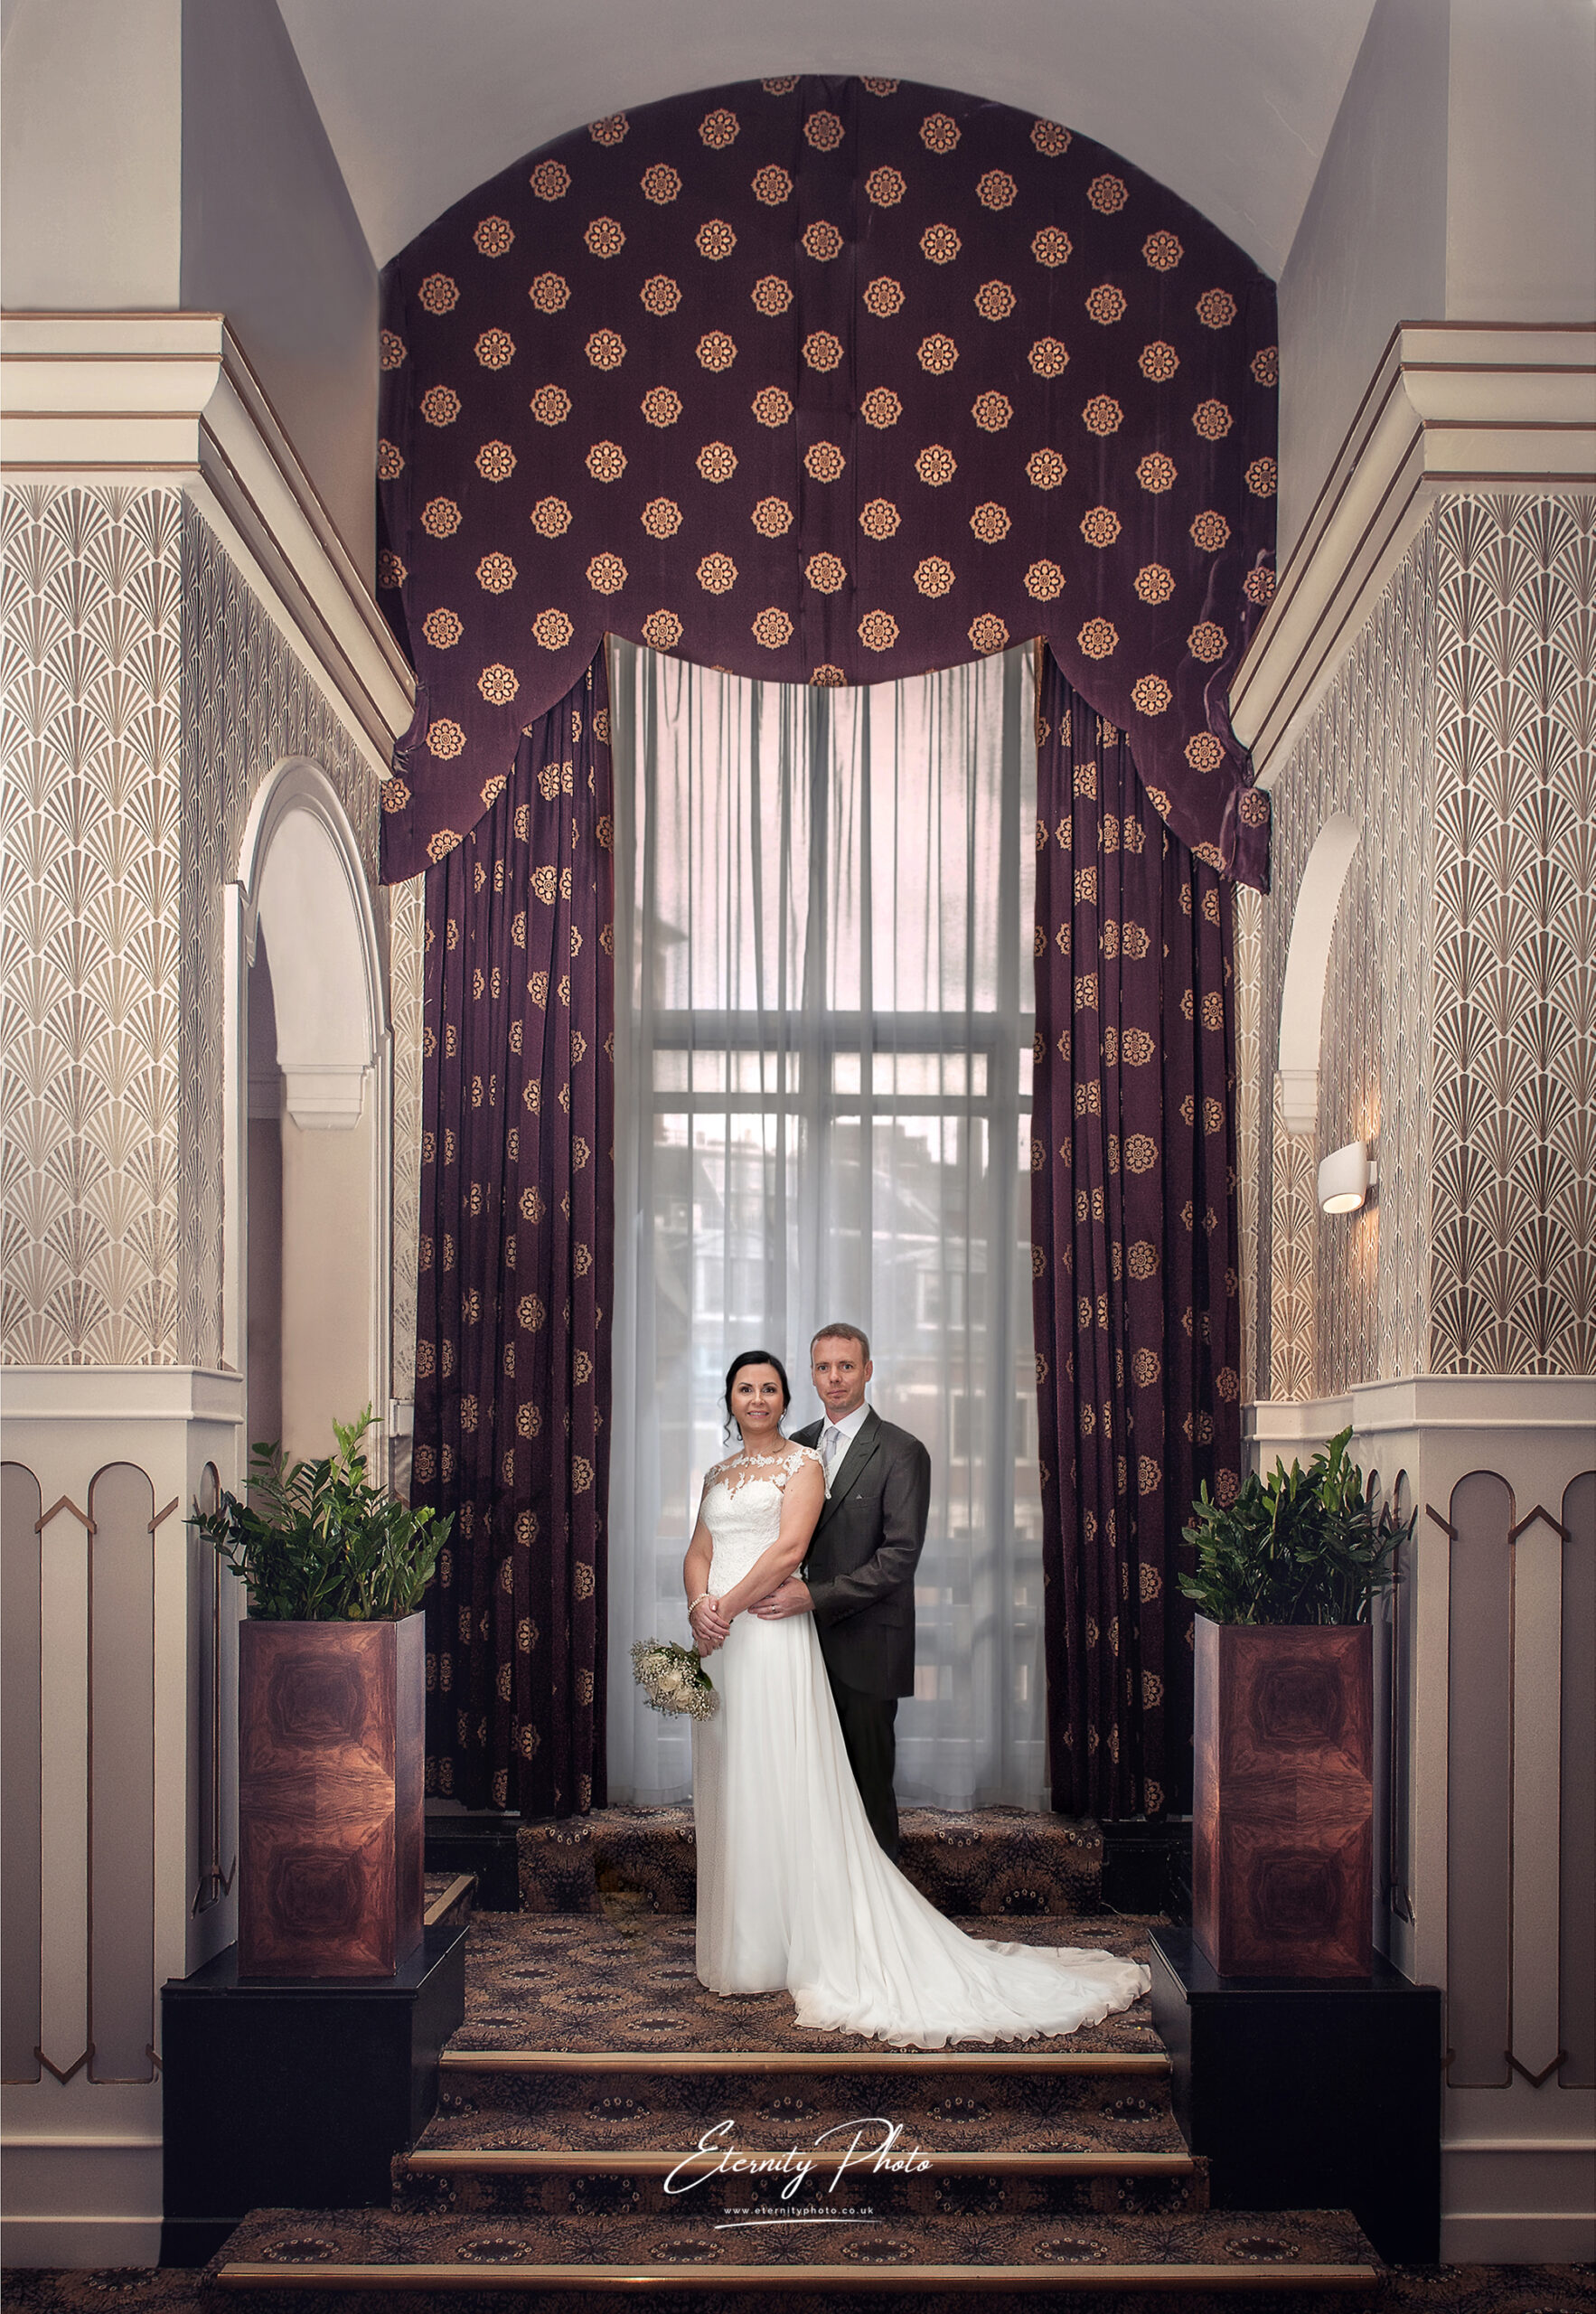 Bride and groom posing in elegant vintage-style interior.